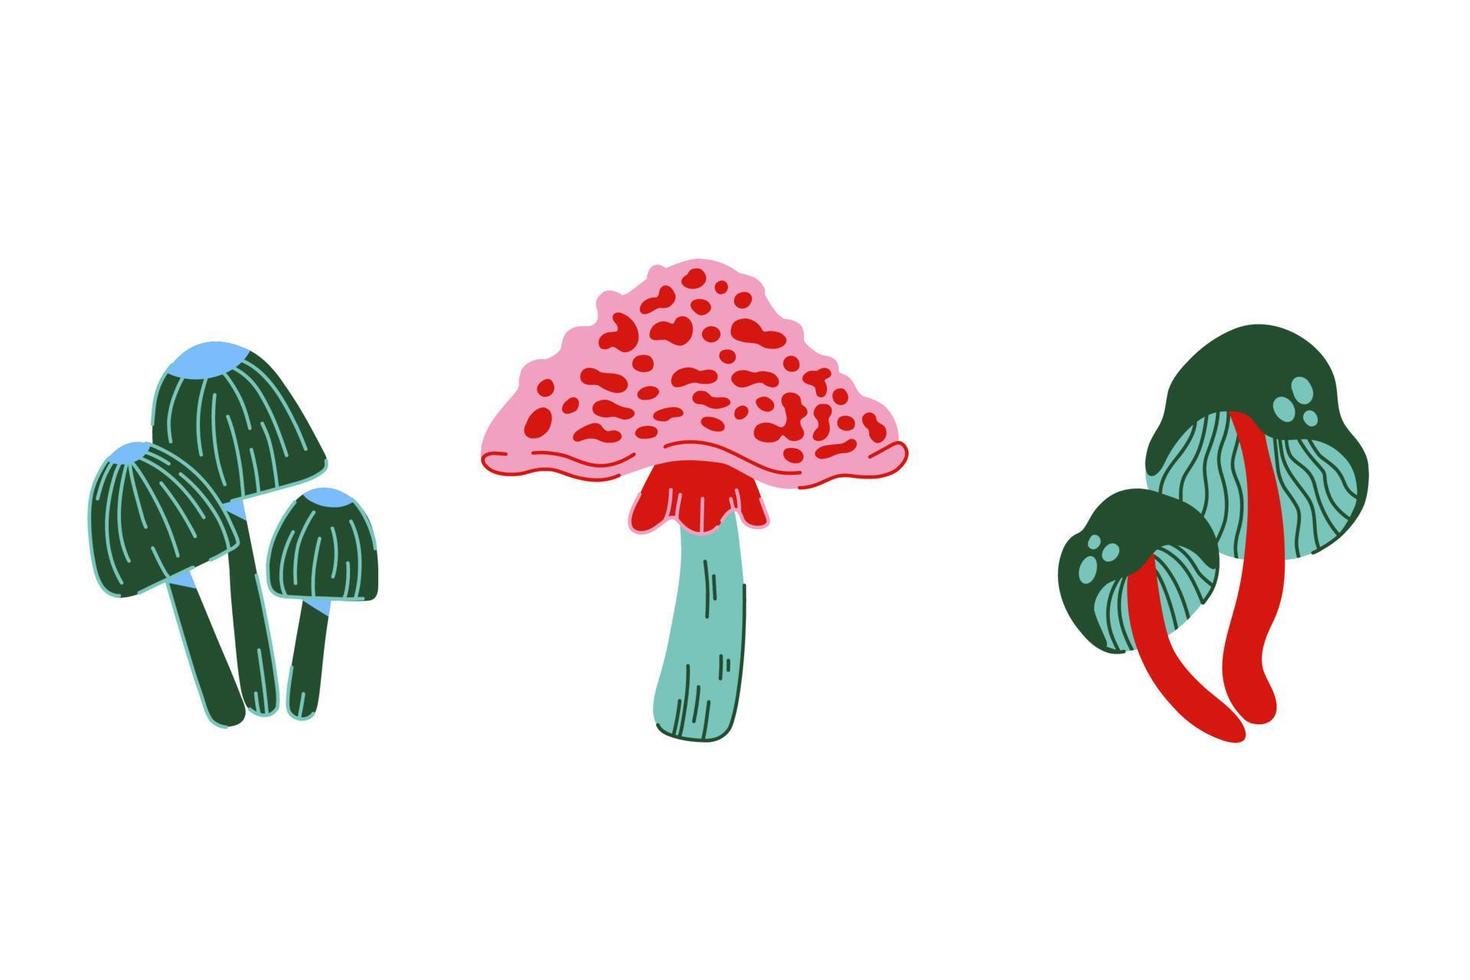 pericoloso insieme di funghi velenosi. collezione di funghi vettoriali colorati disegnati a mano in stile scarabocchio